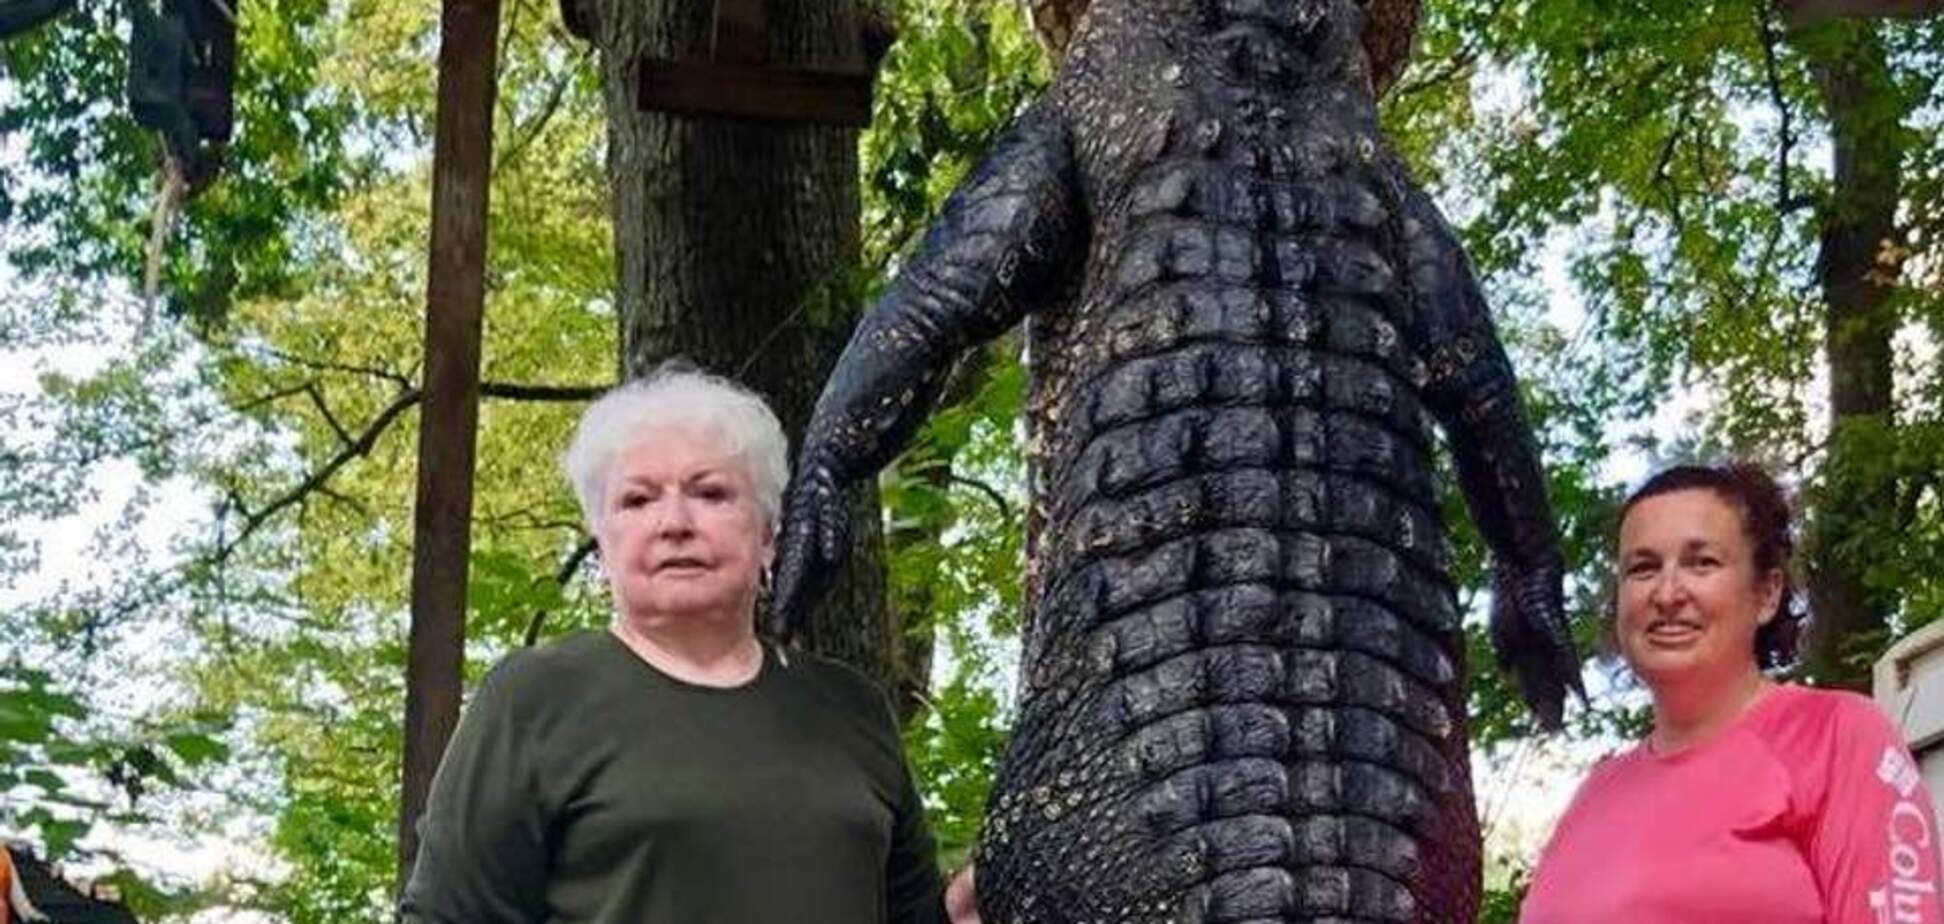 Техасская стрельба из винтовки: бабушка-мэр застрелила 3-метрового аллигатора, который съел ее пони